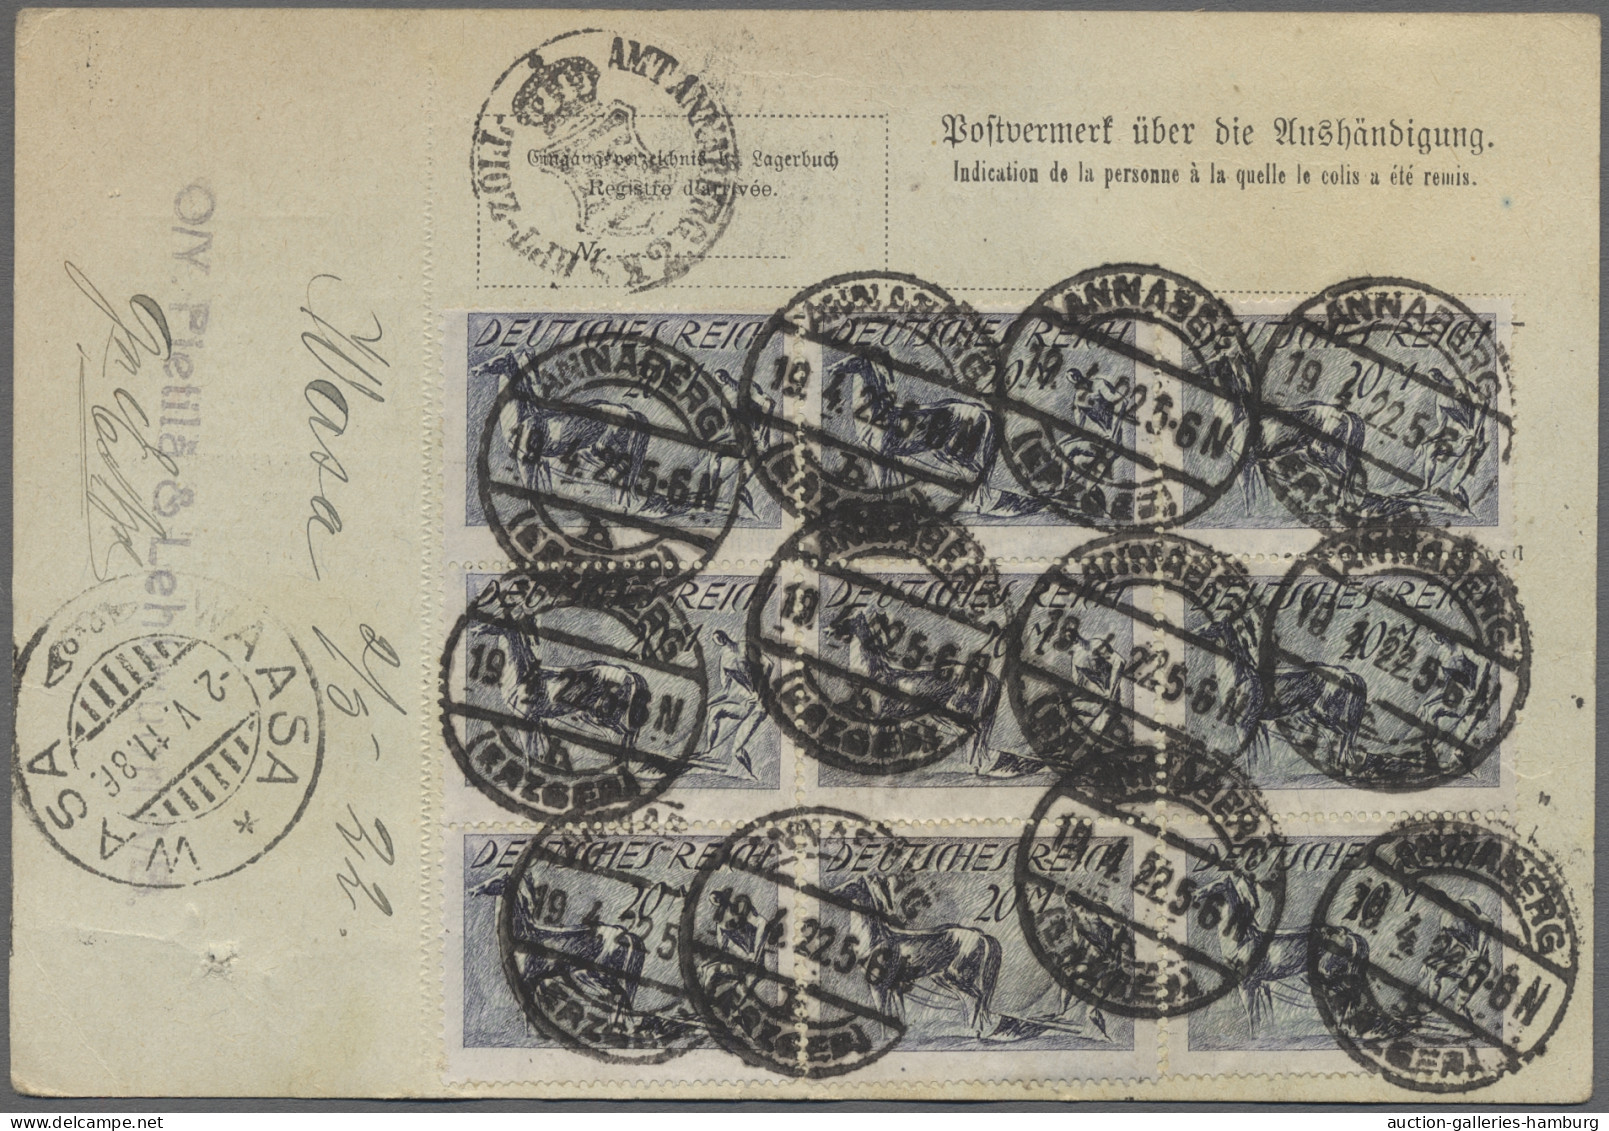 Brf. Deutsches Reich: 1908-1922, Partie von 25 nach Finnland gelaufenen Auslandspaket